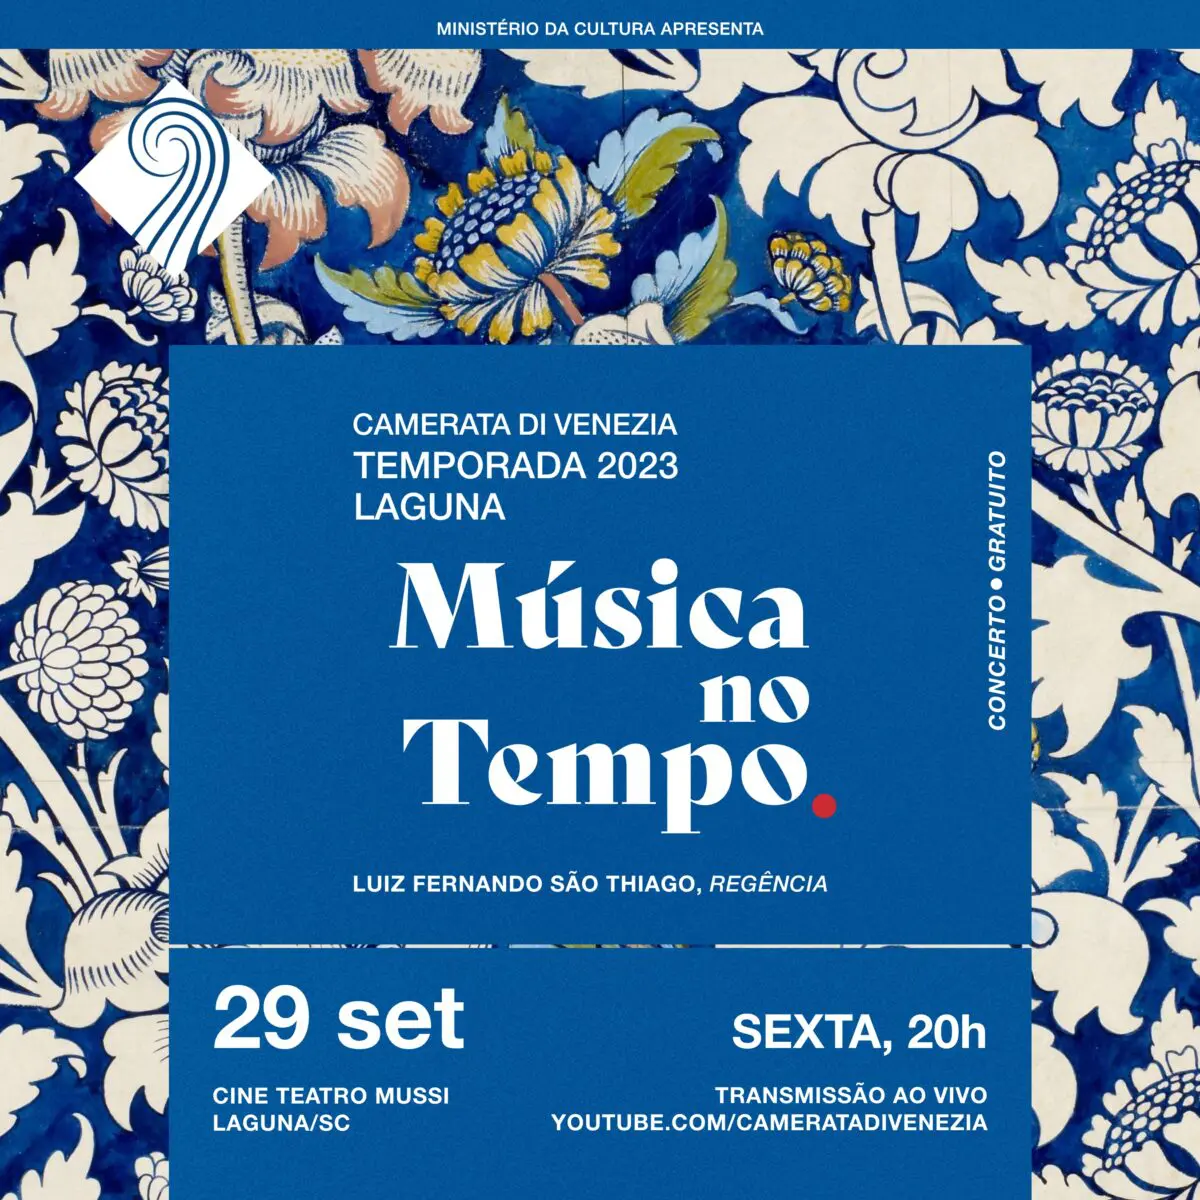 Camerata di Venezia apresenta concerto Música no Tempo em Laguna com entrada gratuita